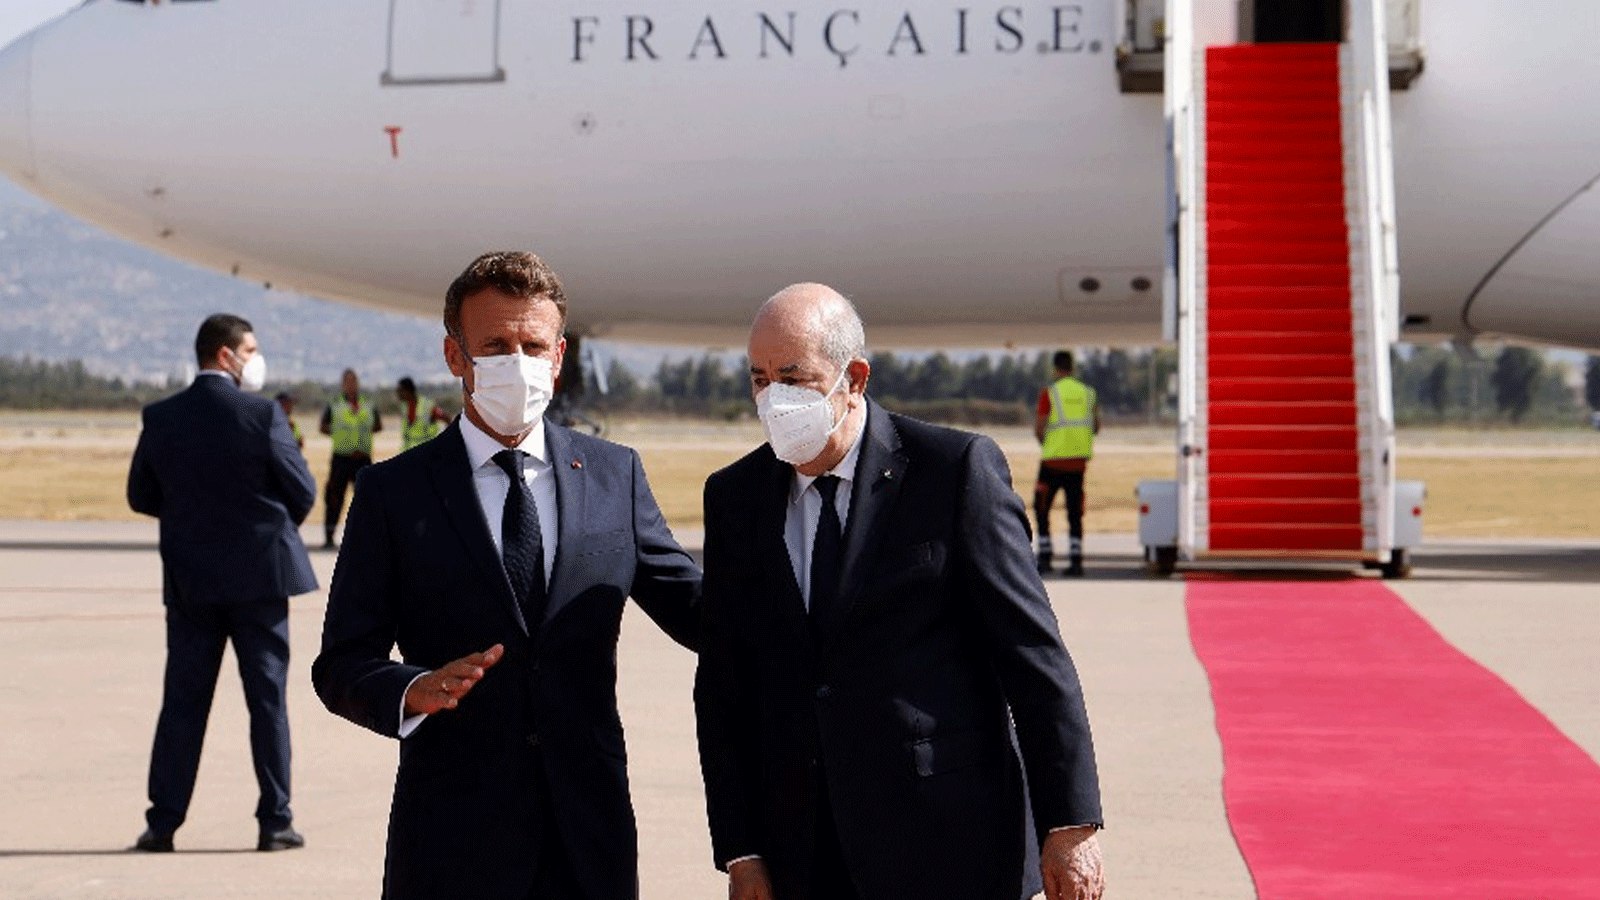 الرئيس الجزائؤي عبدالمجيد تبون يستقبل الرئيس الفرنسي إيمانويل ماكرون في المطار